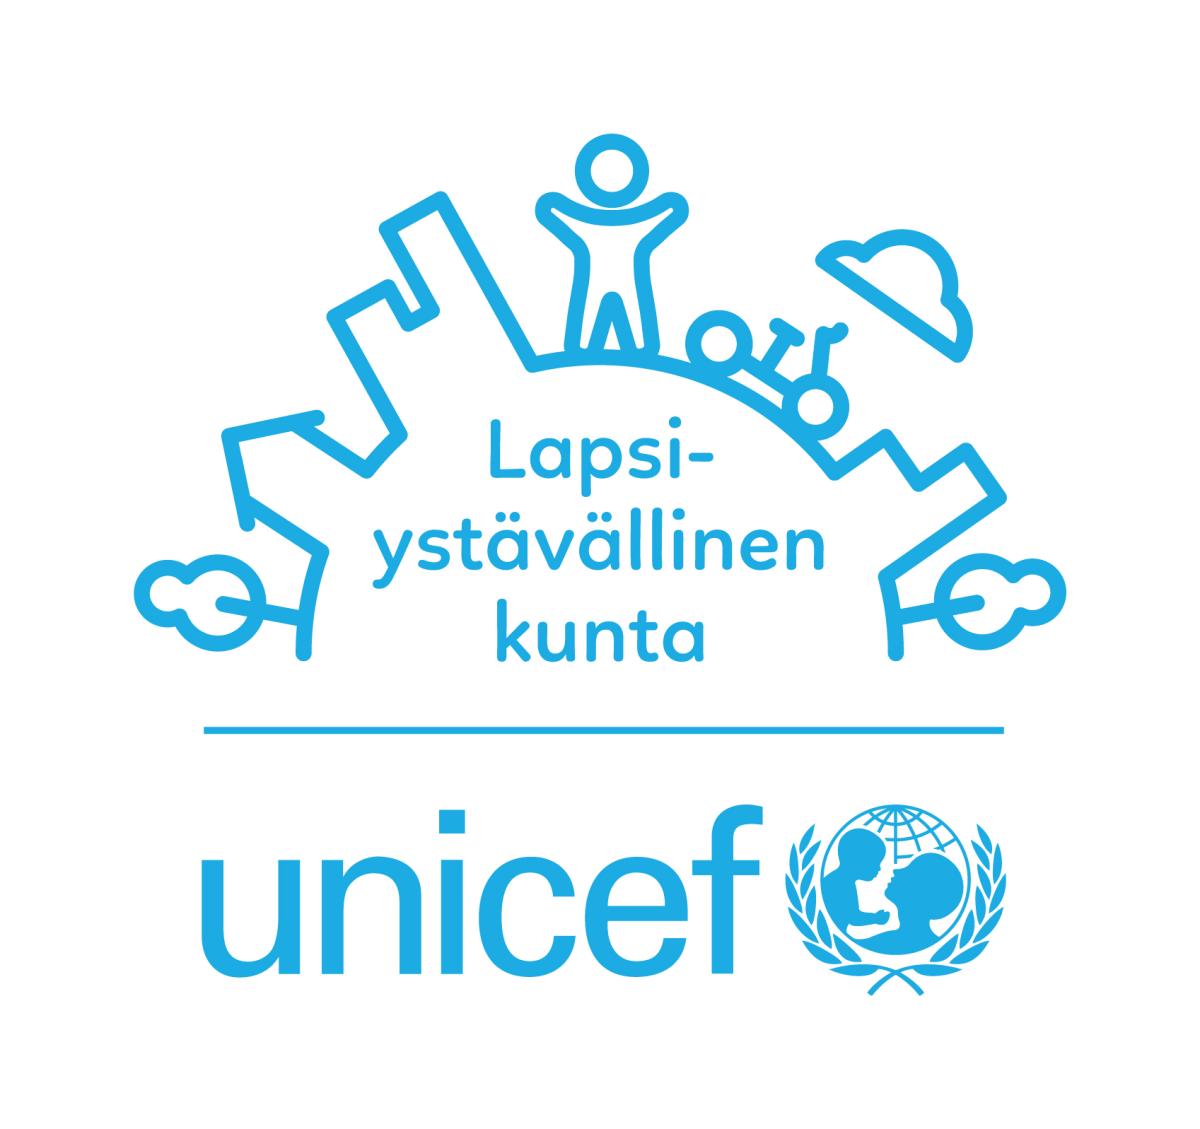 Lapsiystävällinen kunta -logo sinisenä, pystyversio